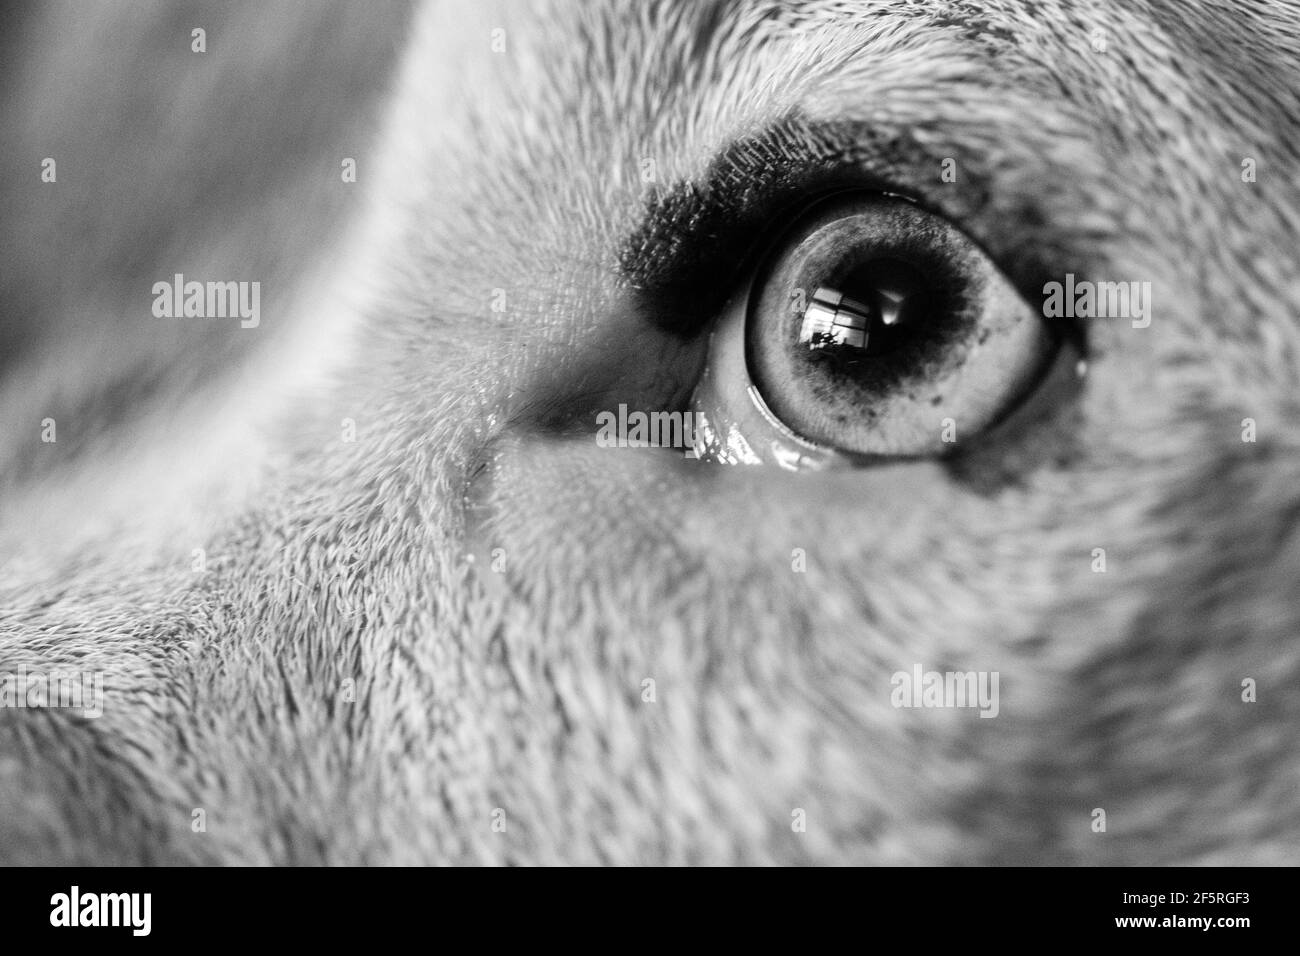 Gros plan de l'œil d'un chien mixte (American Staffordshire Pit Bull Terrier et American Pit Bull Terrier) (Canis lupus familiaris). Banque D'Images